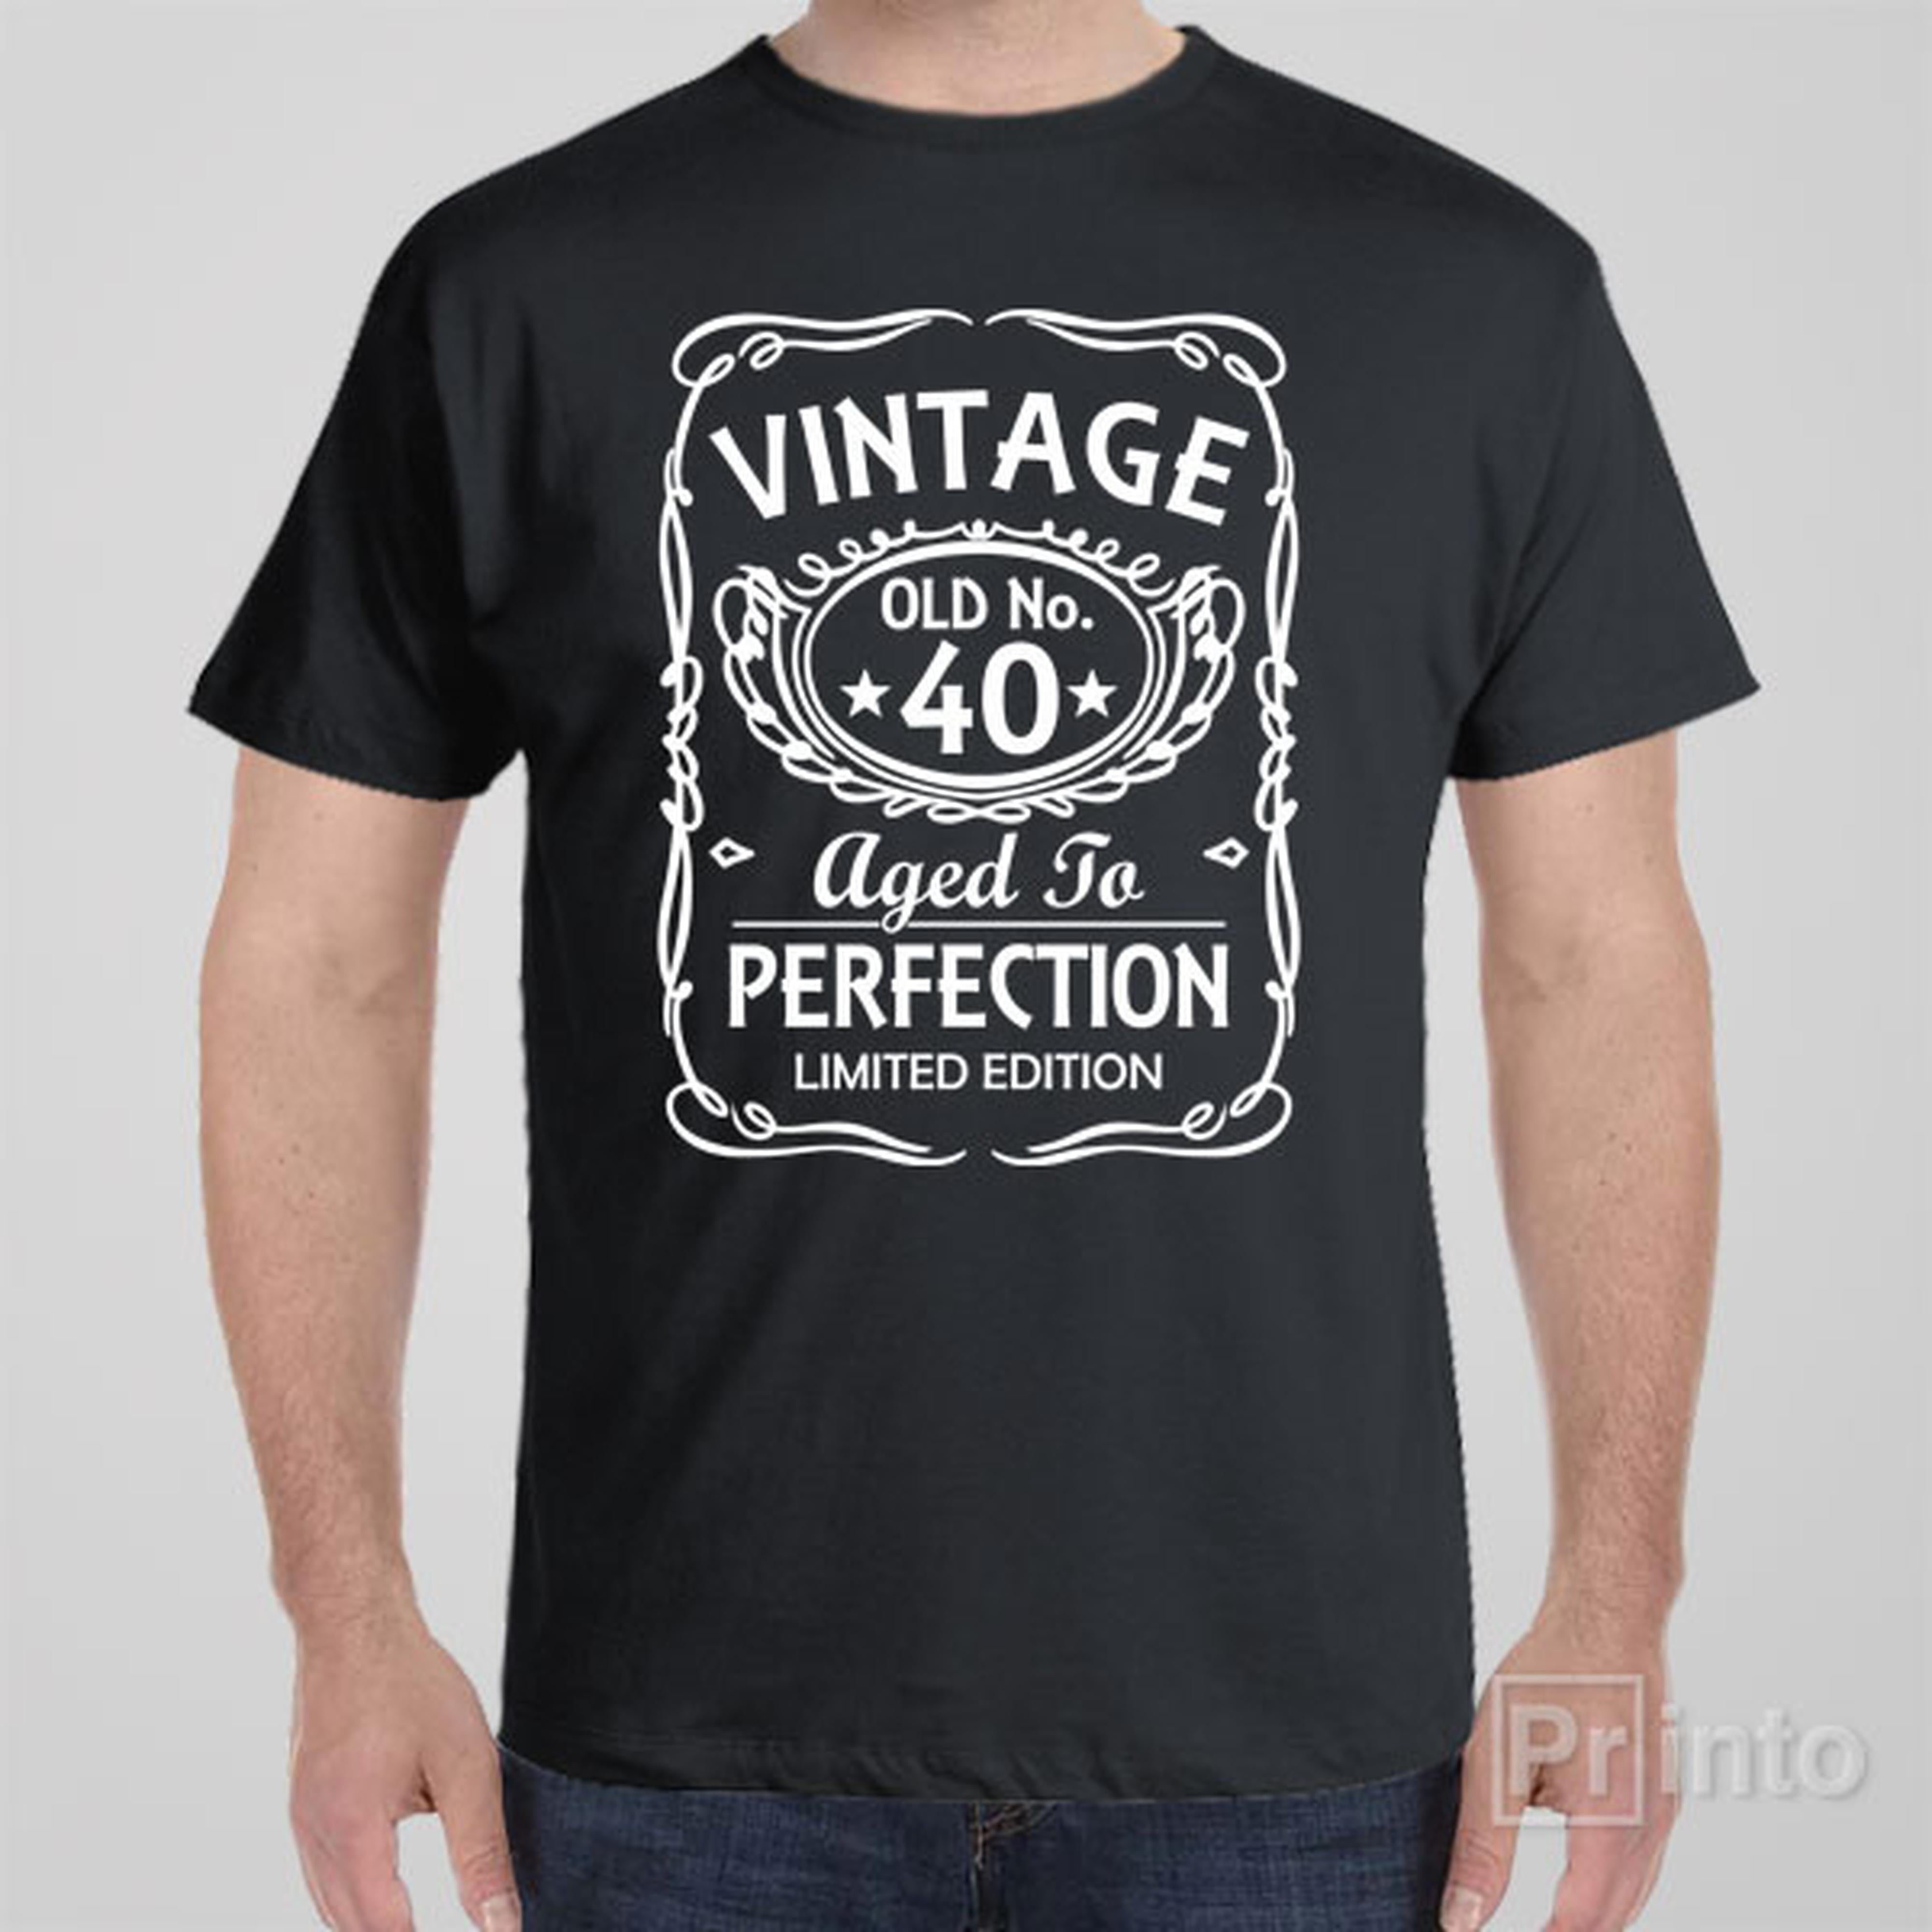 vintage-old-no-40-t-shirt